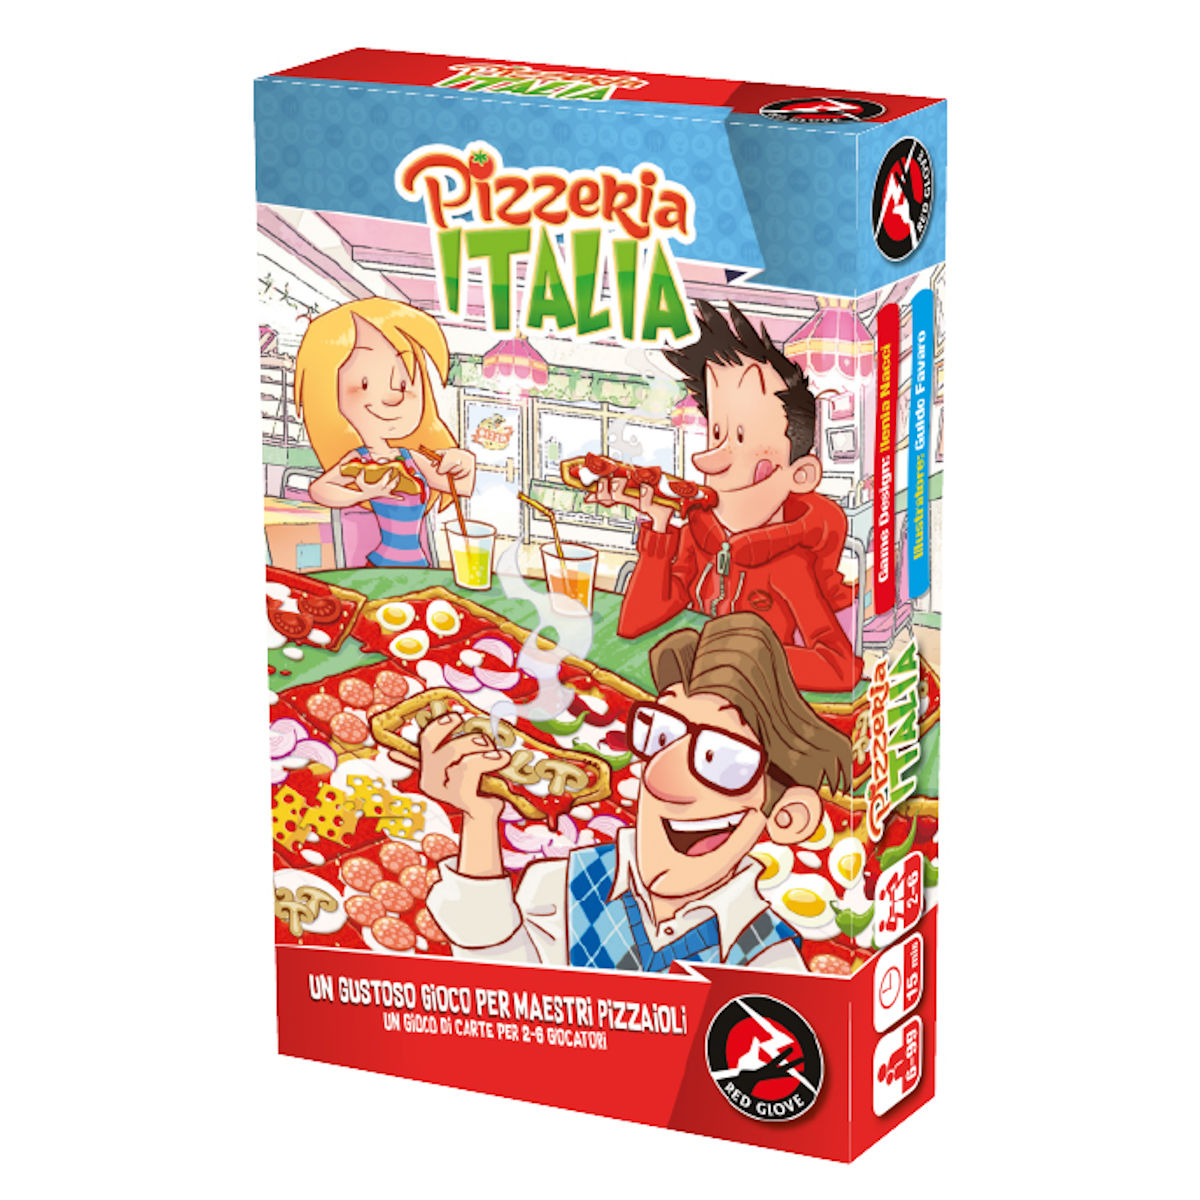 Pizzeria Italia - Gioco di Memoria - Red Glove